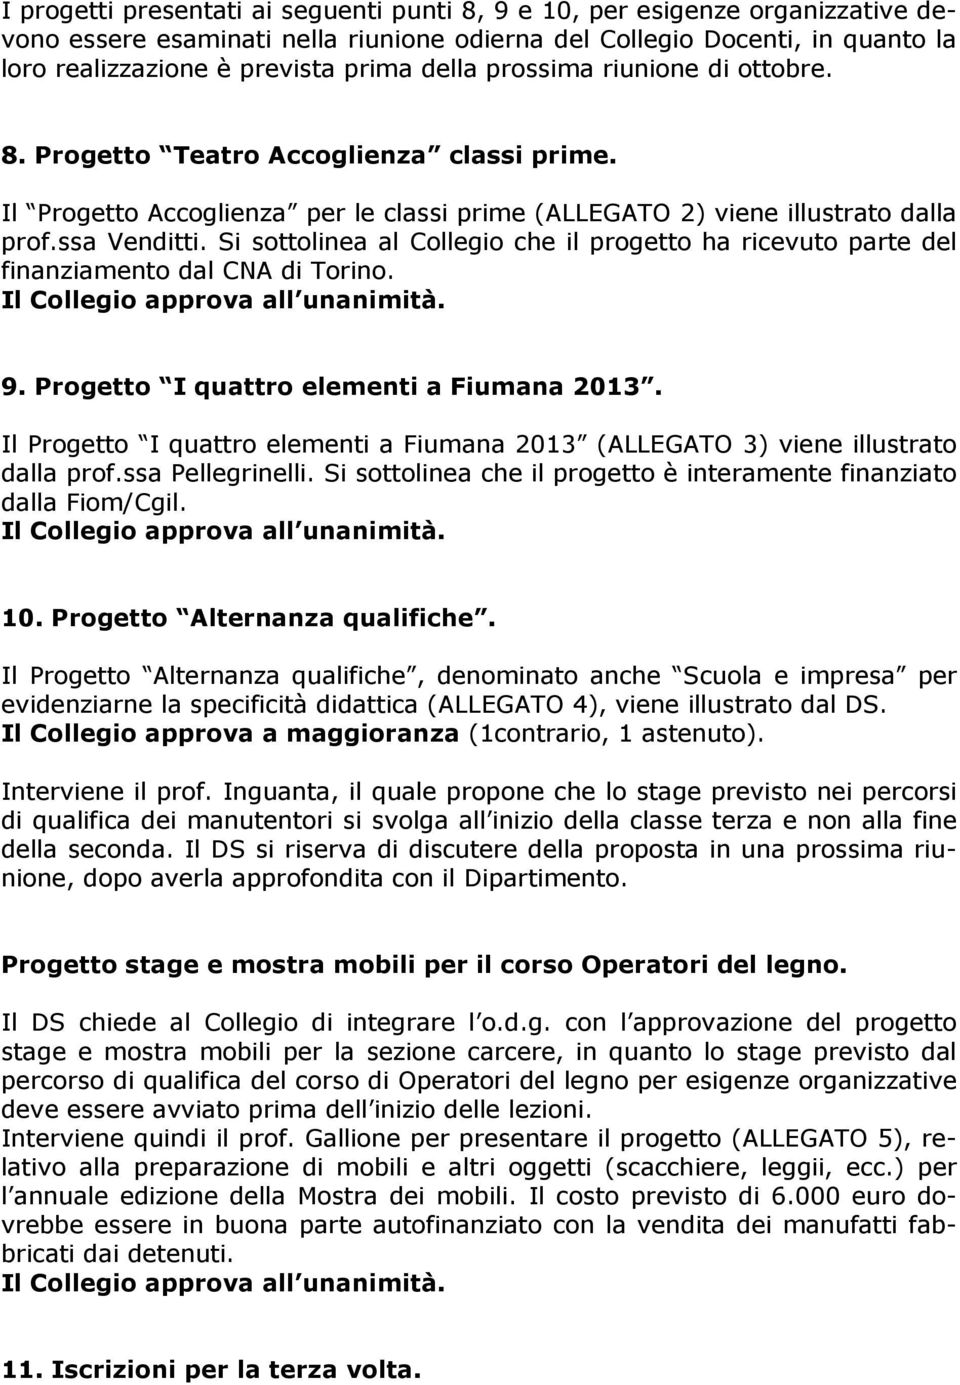 Si sottolinea al Collegio che il progetto ha ricevuto parte del finanziamento dal CNA di Torino. 9. Progetto I quattro elementi a Fiumana 2013.